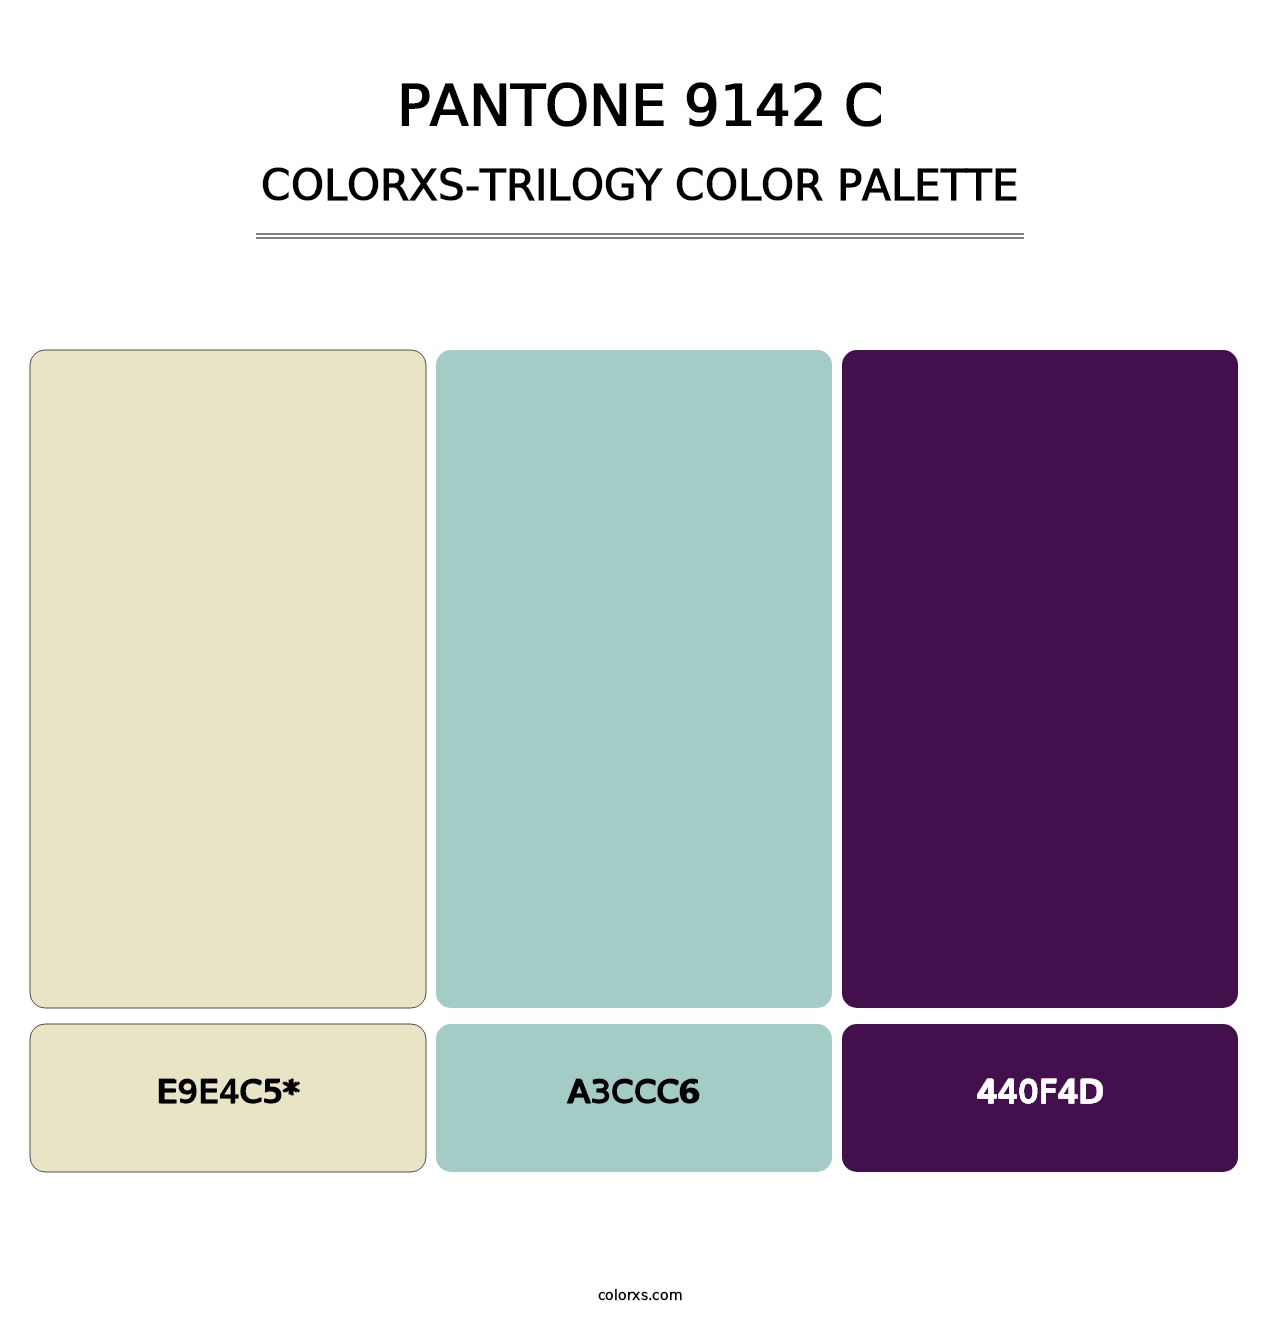 PANTONE 9142 C - Colorxs Trilogy Palette